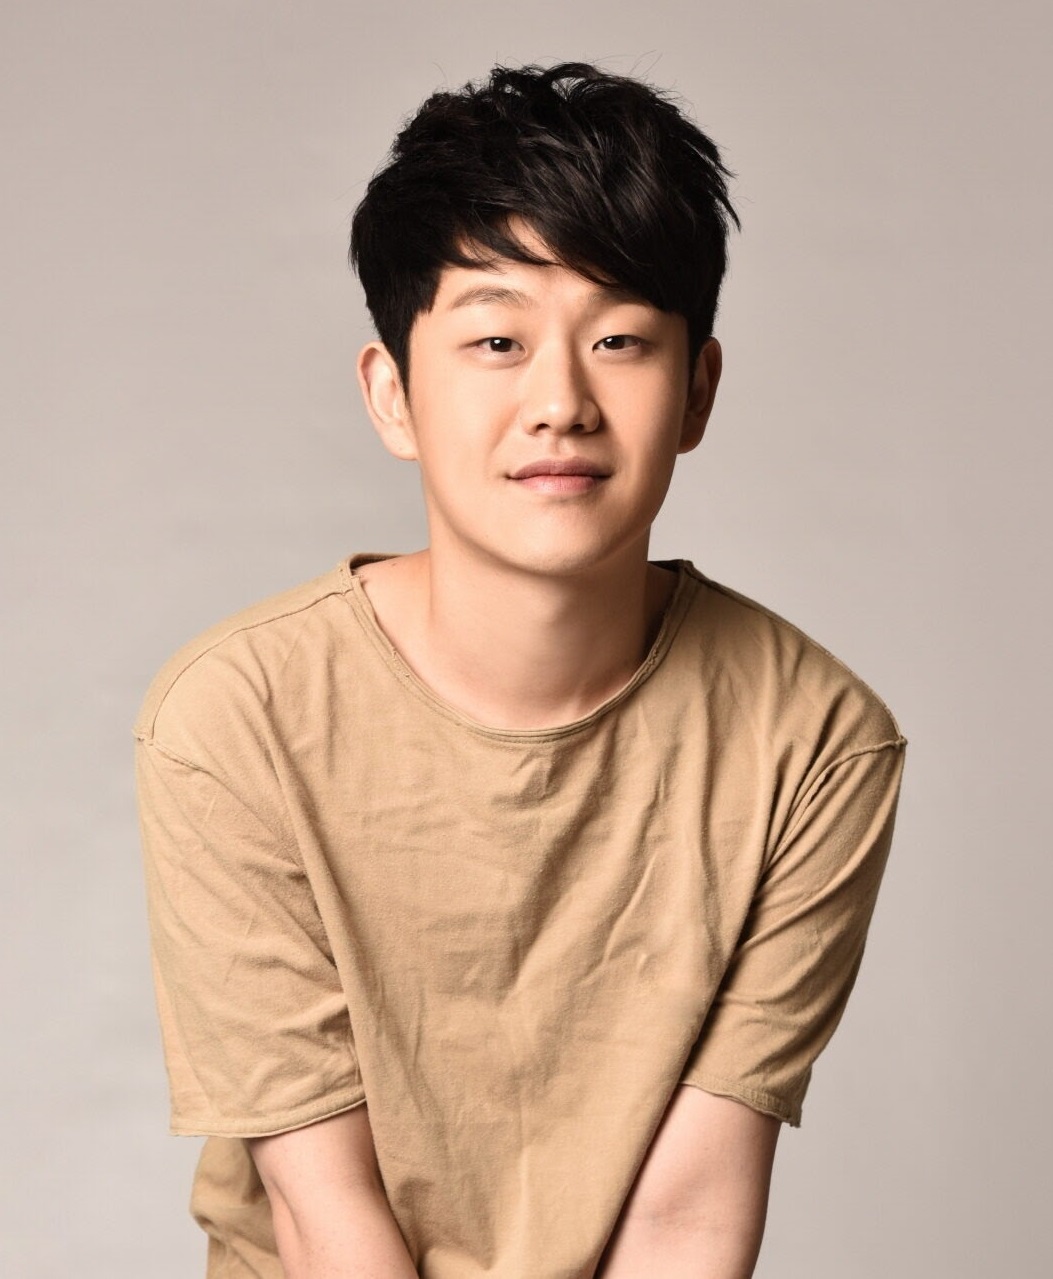 Ca sĩ Choi Seong Bong bị tố giả bệnh ung thư để nhận tiền quyên góp.